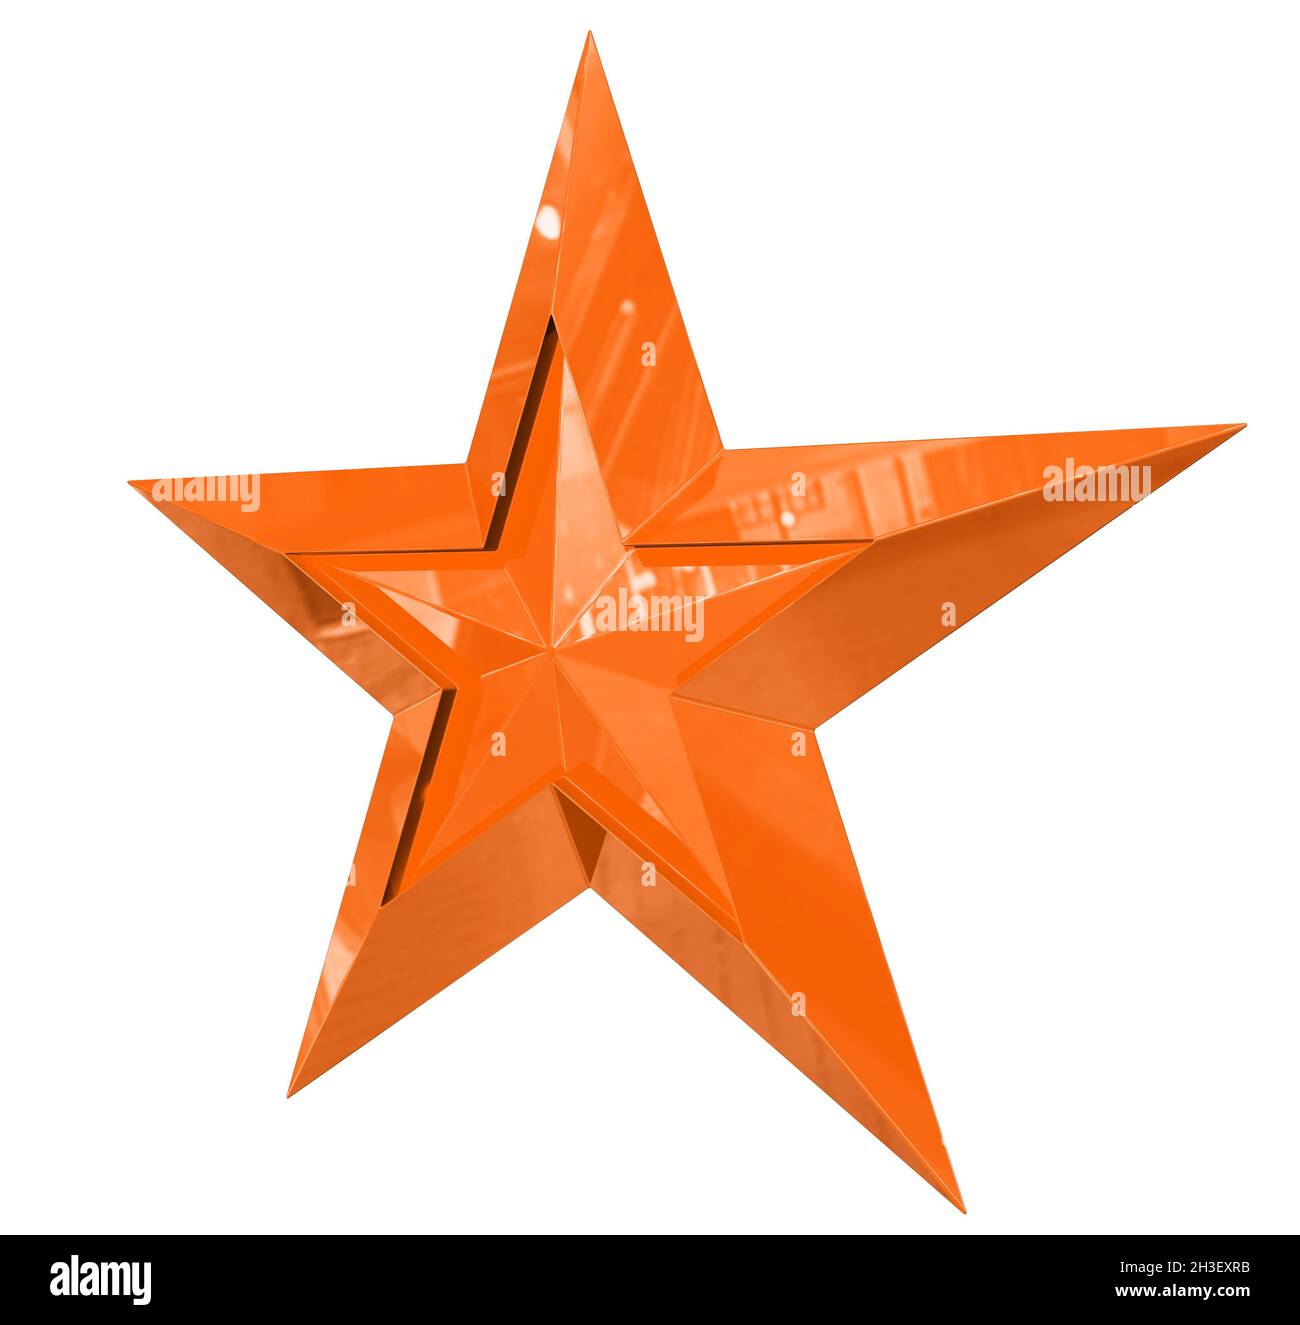 5-Punkt-Stern - Weihnachtsstern - orange einzeln isoliert auf weißem Hintergrund - 3d-Rendering Stockfoto